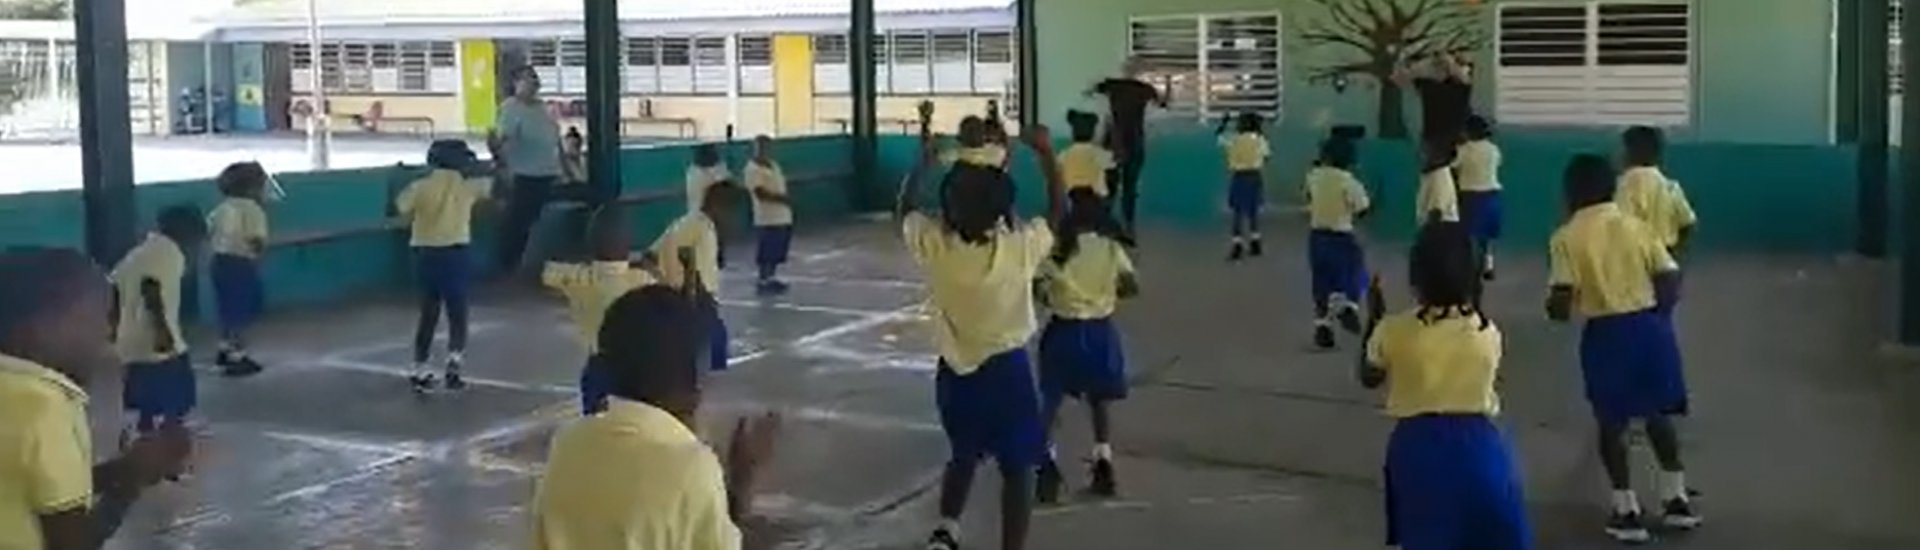 Dansende kinderen op de J.W.Th. Schotborghschool.